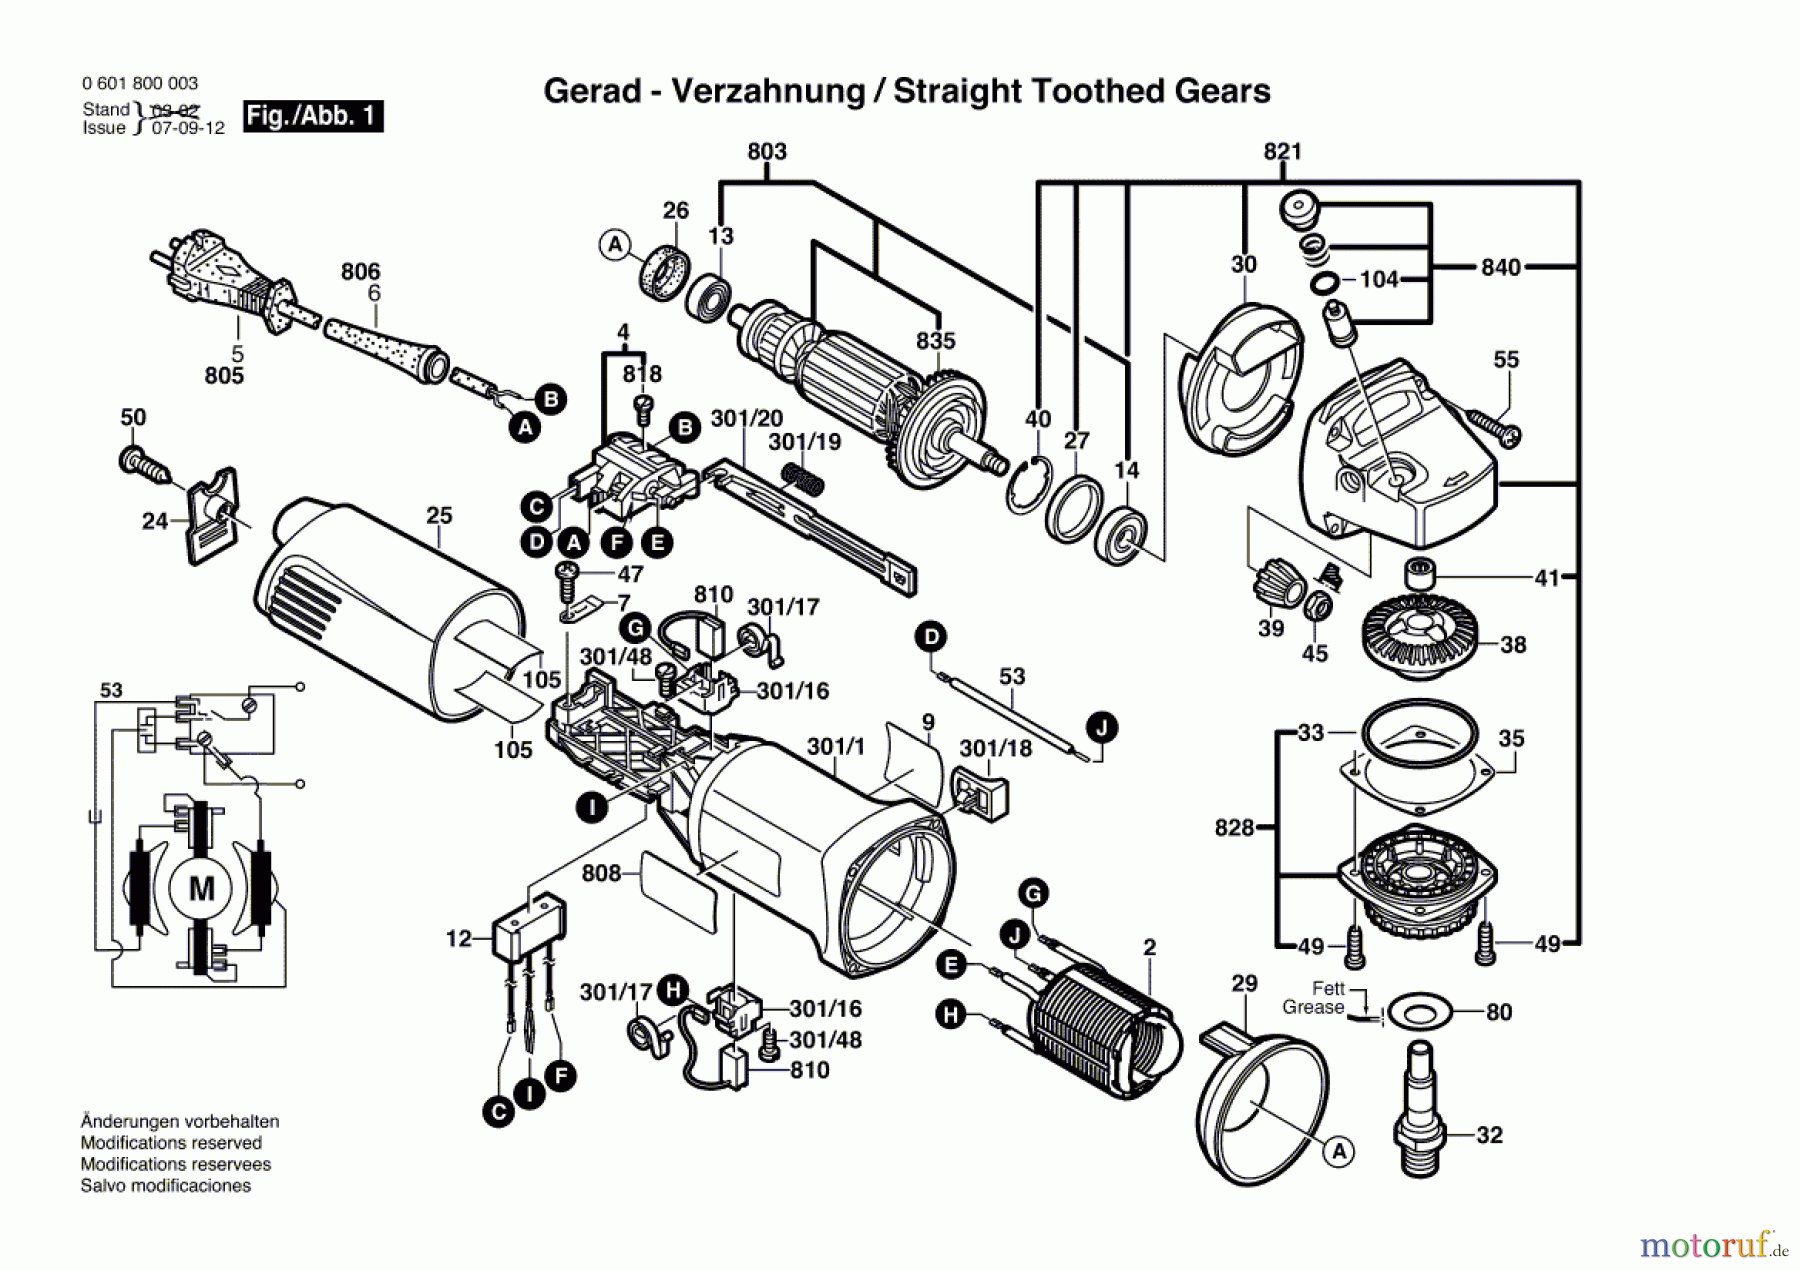  Bosch Werkzeug Winkelschleifer GWS 7-115 Seite 1